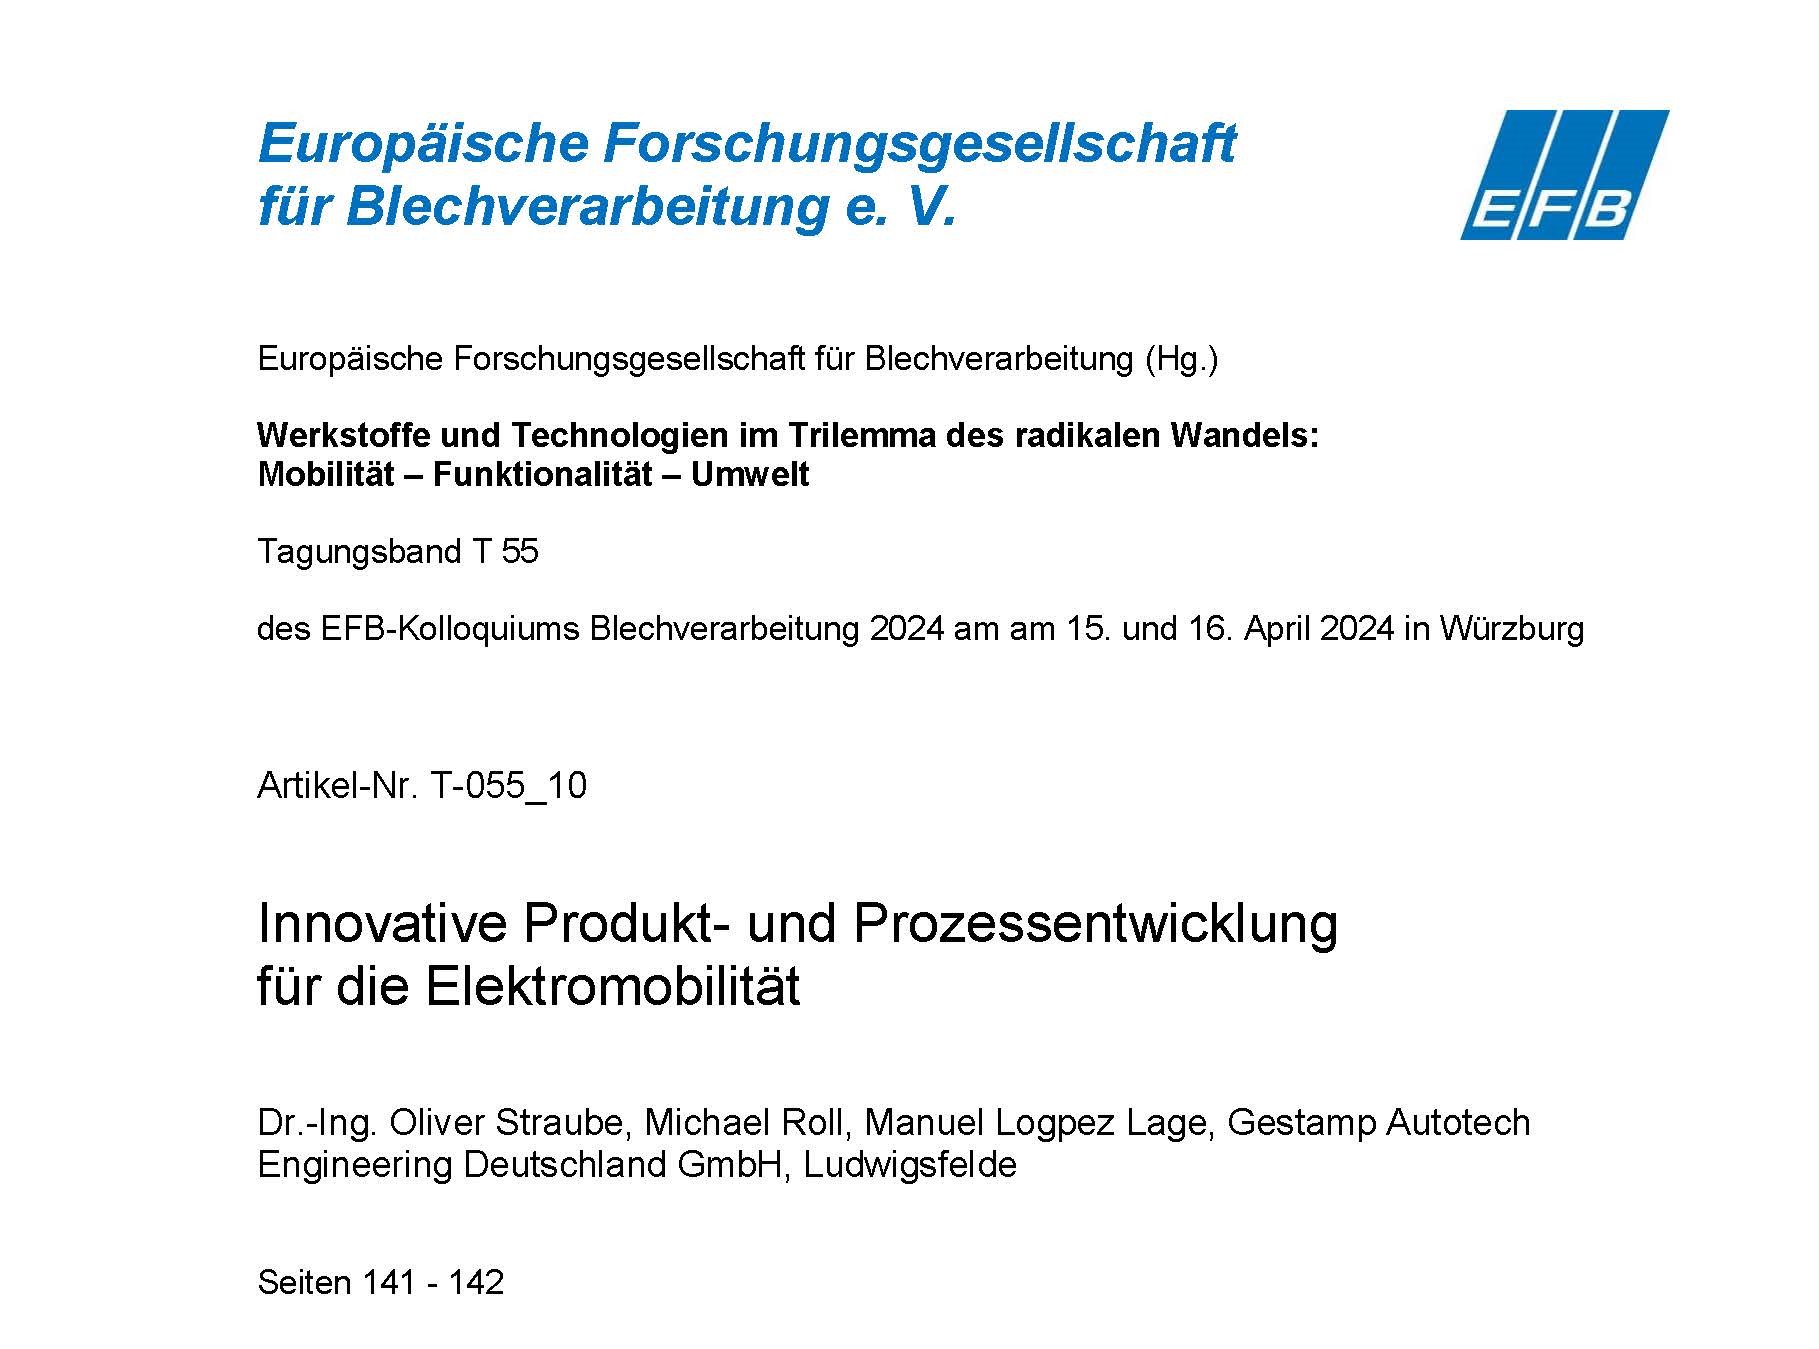 Innovative Produkt- und Prozessentwicklung für die Elektromobilität